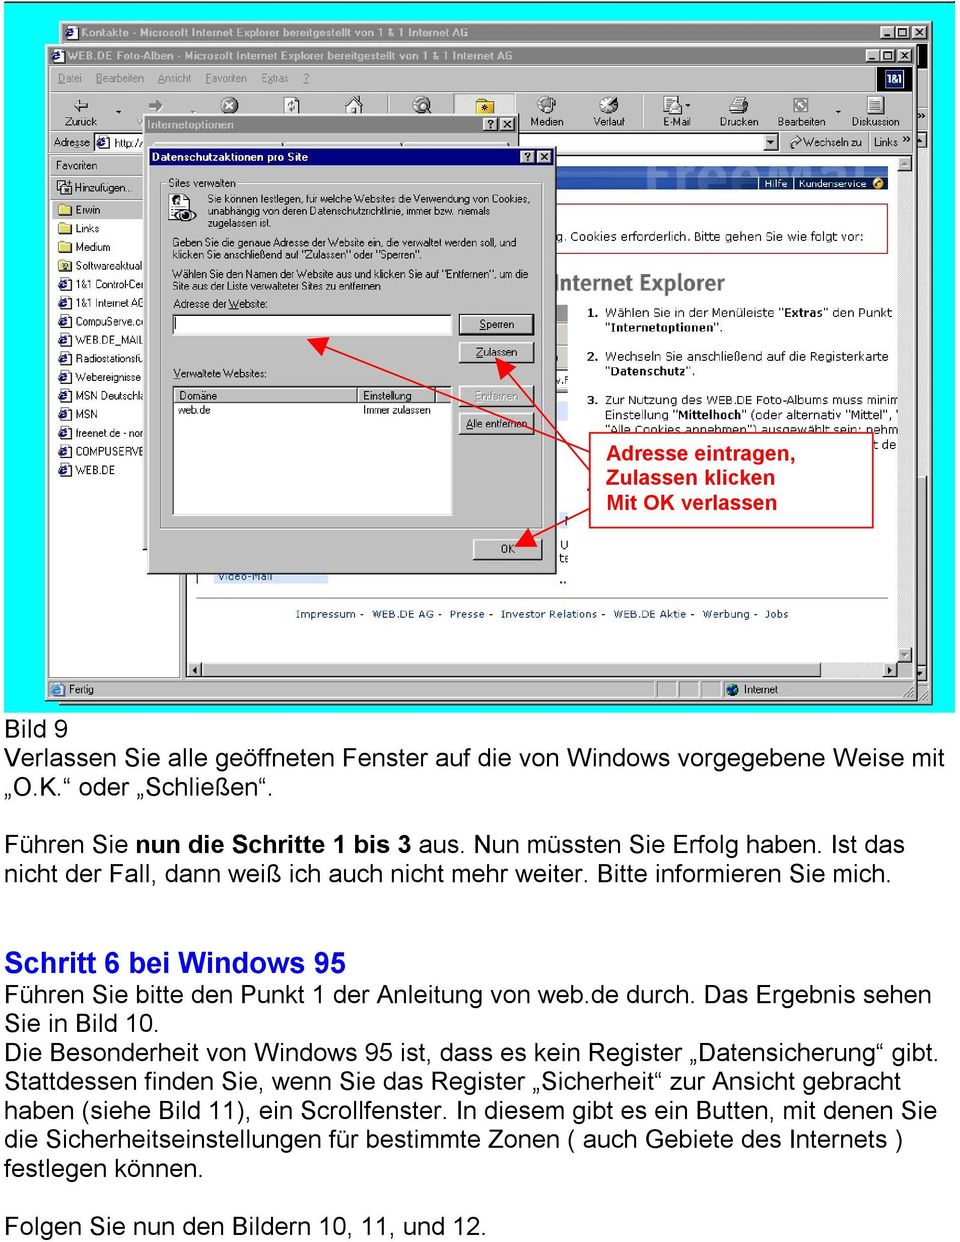 Schritt 6 bei Windows 95 Führen Sie bitte den Punkt 1 der Anleitung von web.de durch. Das Ergebnis sehen Sie in Bild 10. Die Besonderheit von Windows 95 ist, dass es kein Register Datensicherung gibt.